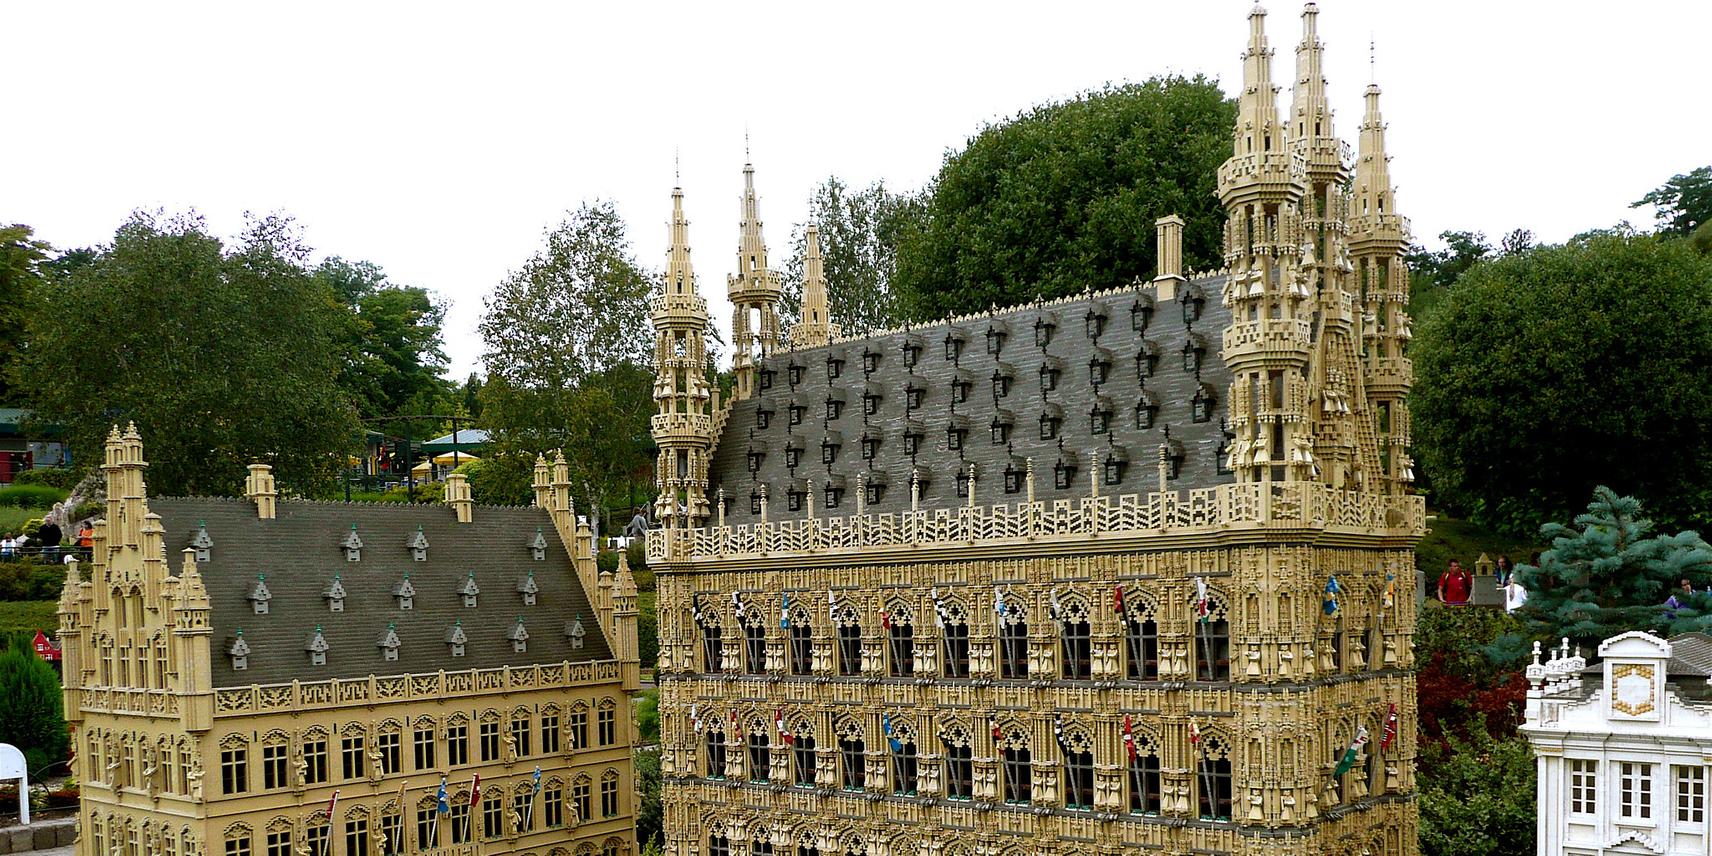 An image of Leuven